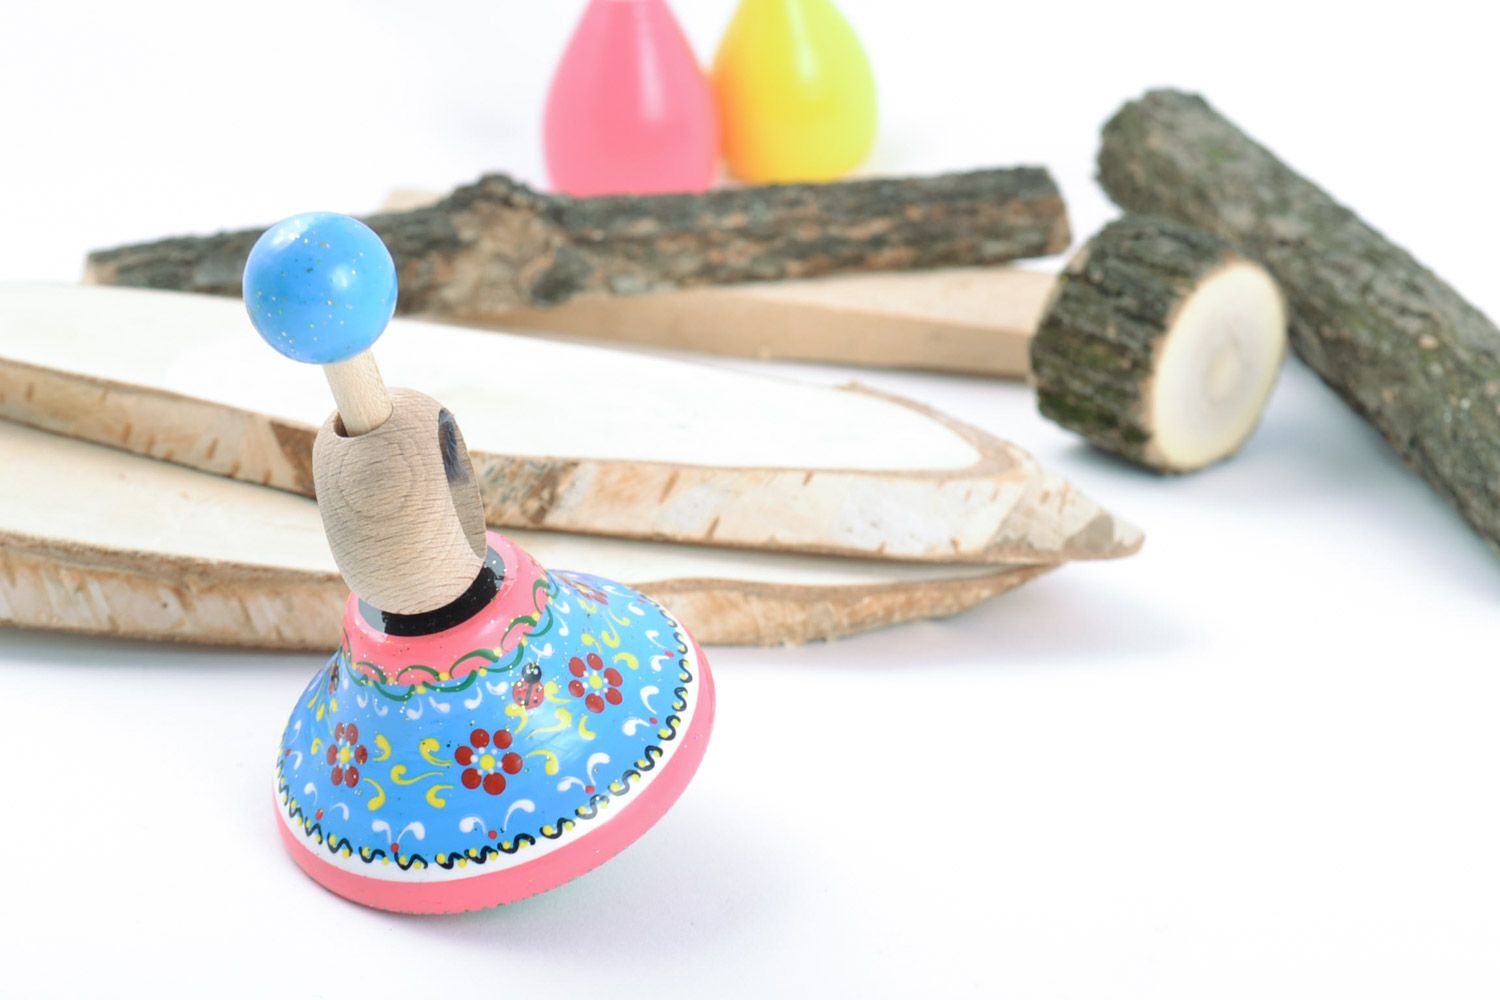 Деревянный волчок хэнд мэйд расписной развивающая игрушка для детей фото 1